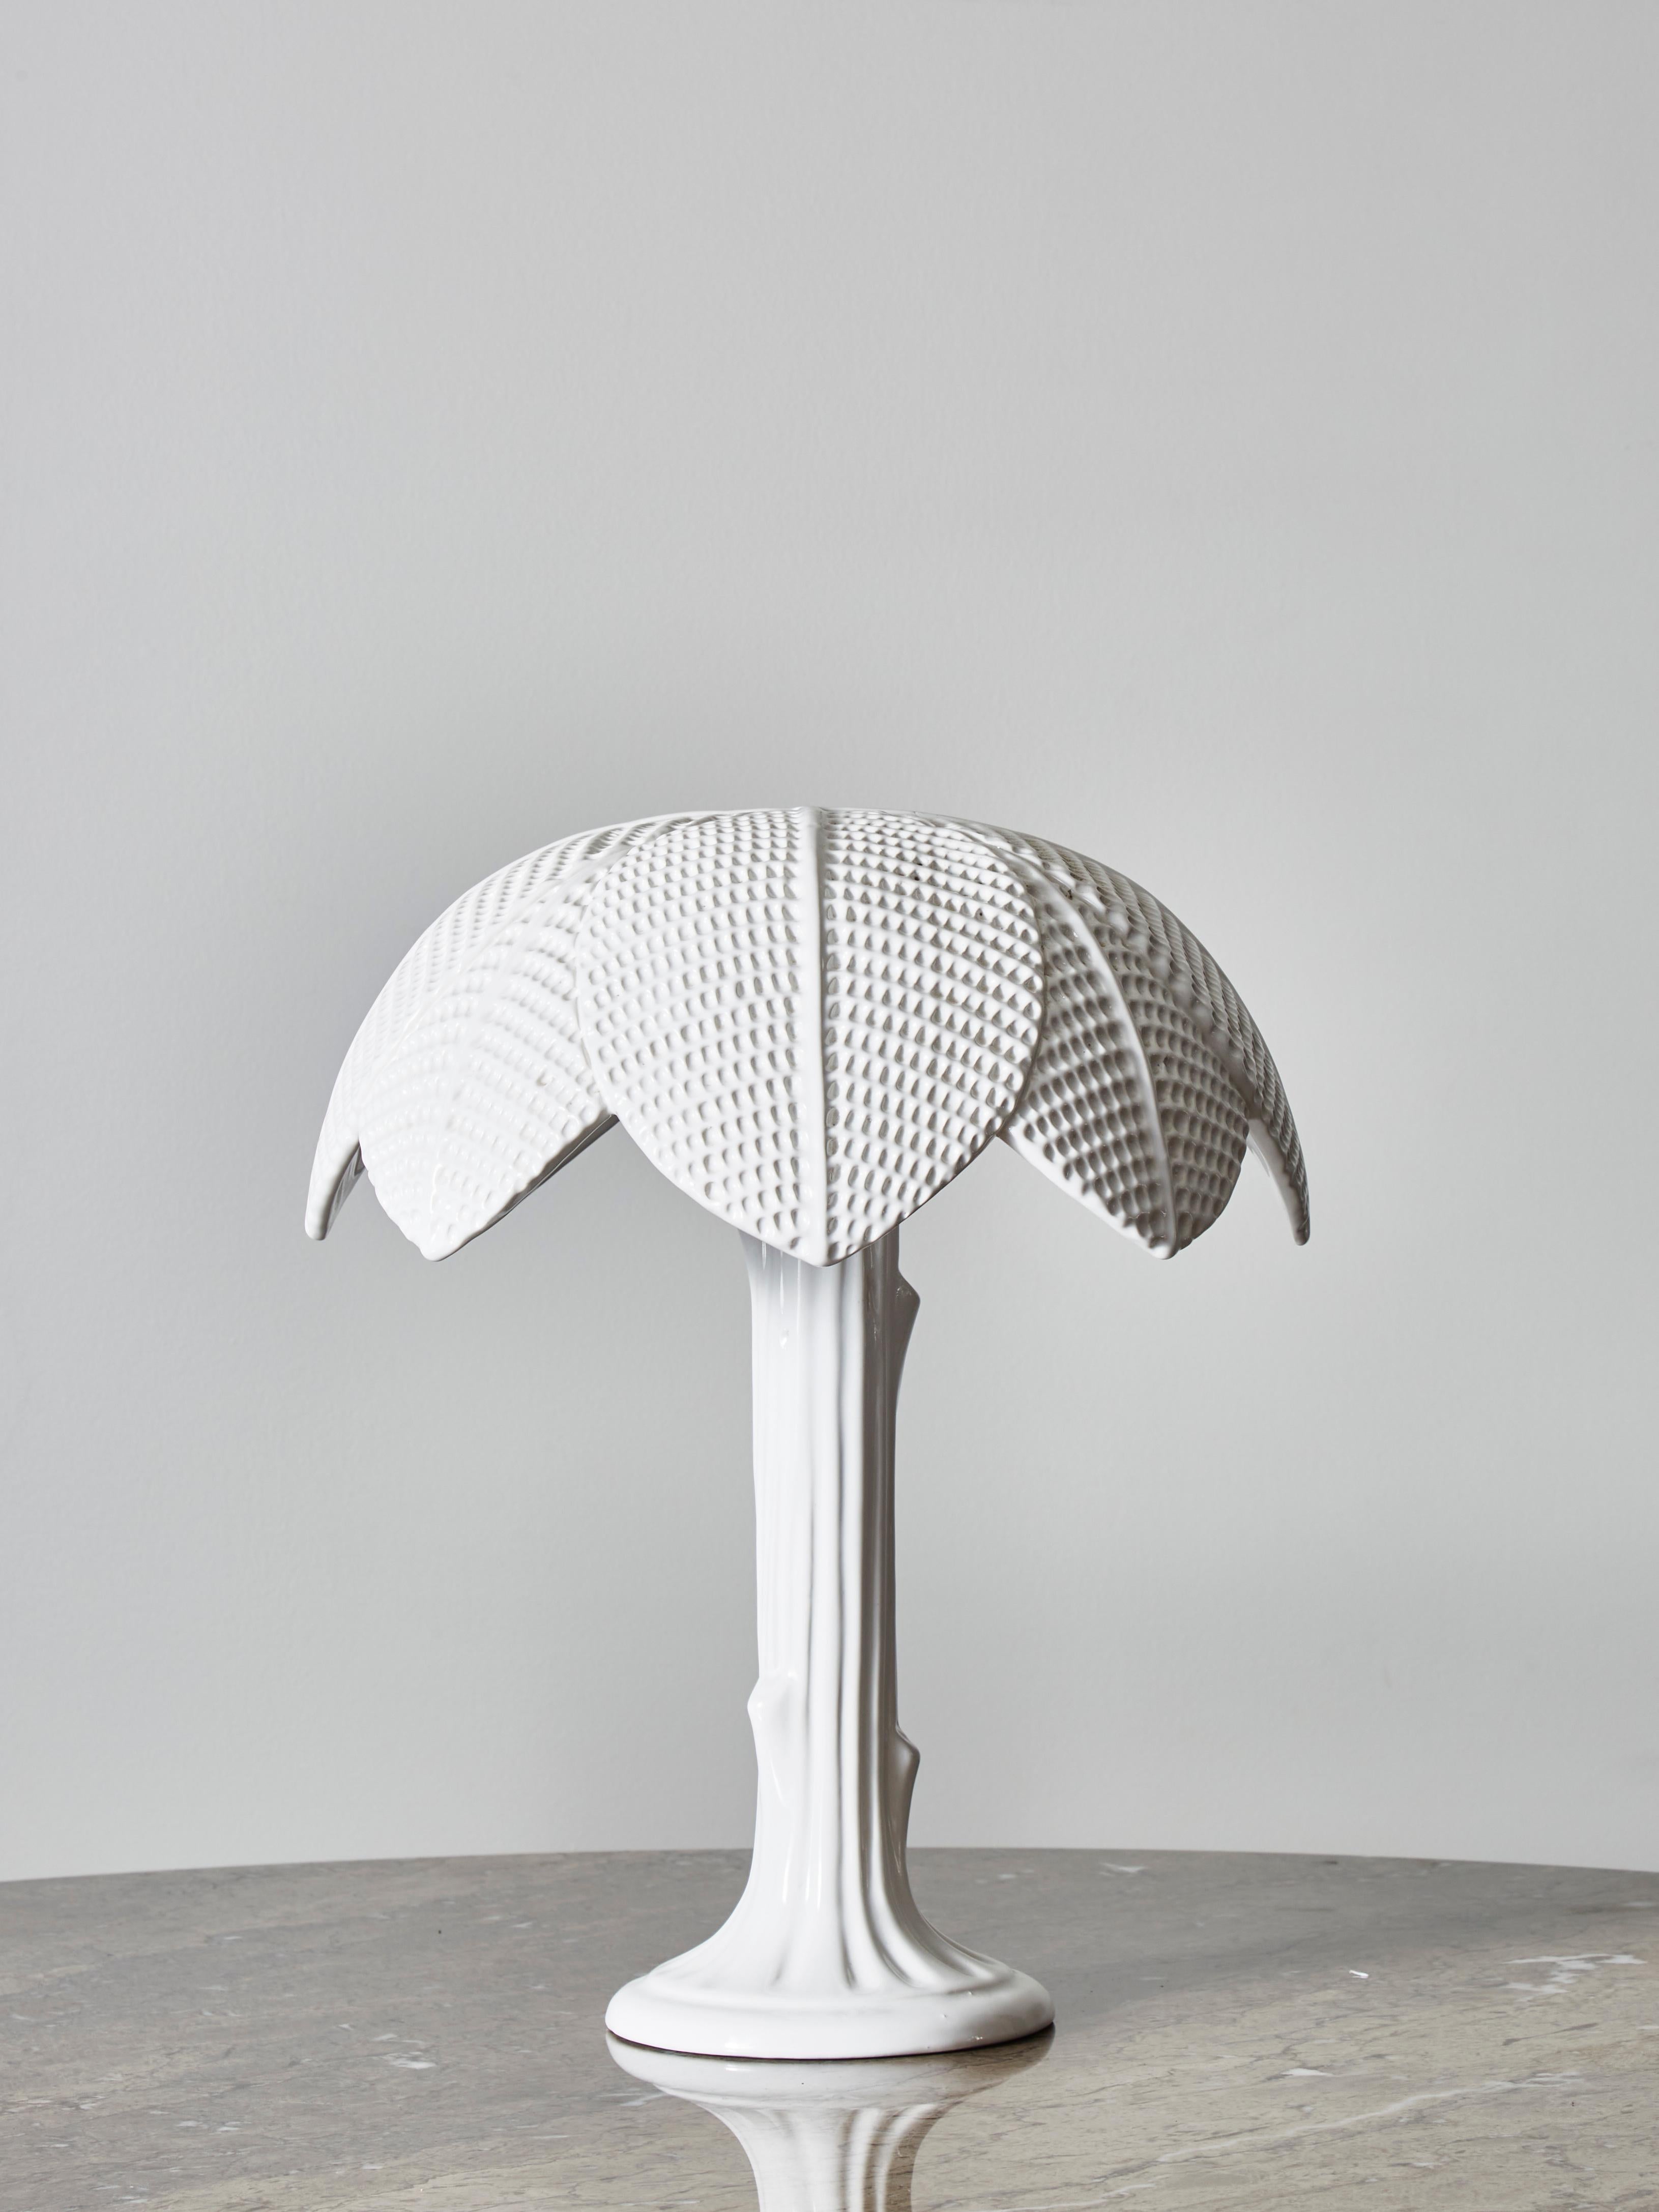 Lampe de table originale de Tommaso Barbi faite d'une seule pièce de céramique blanche émaillée en forme de palmier.

Tampon en bas, petite fente en haut.